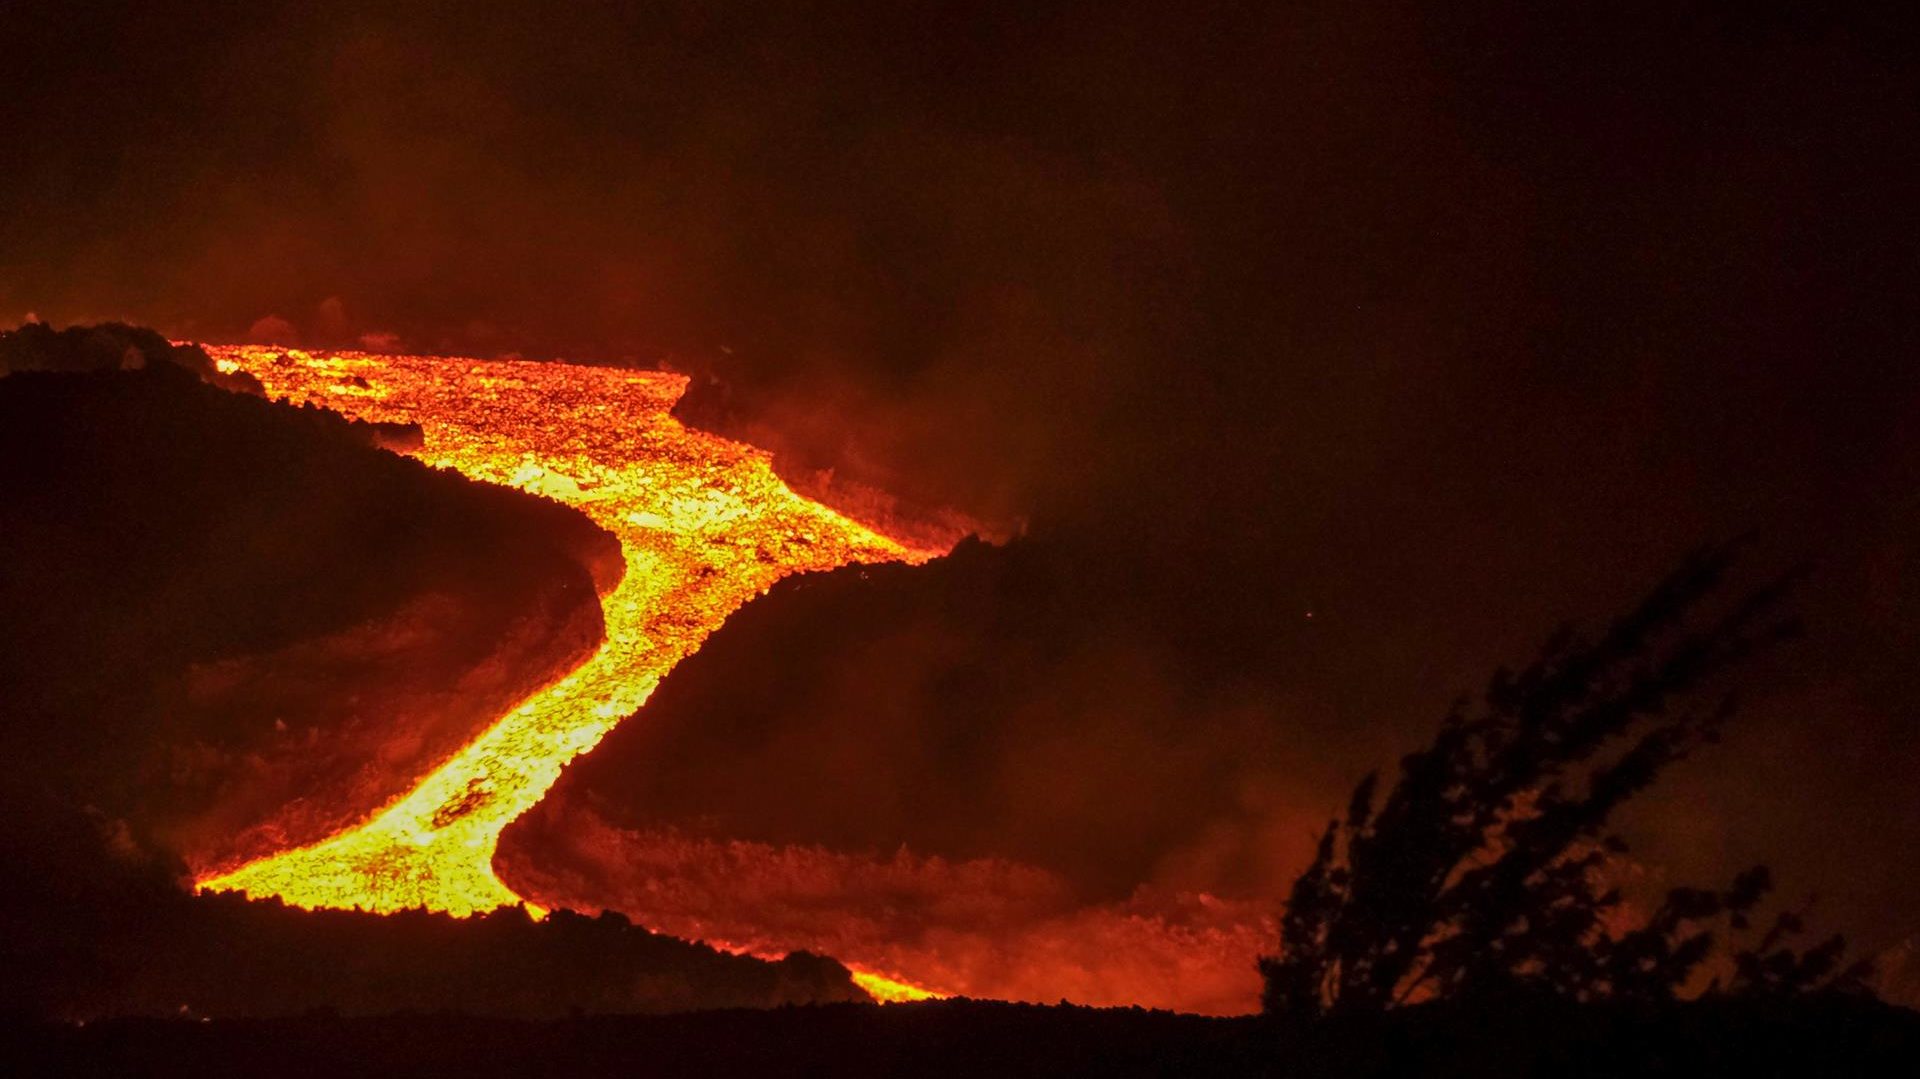 El colapso parcial del cono del volcán de La Palma deja expuesta una gran fuente de lava